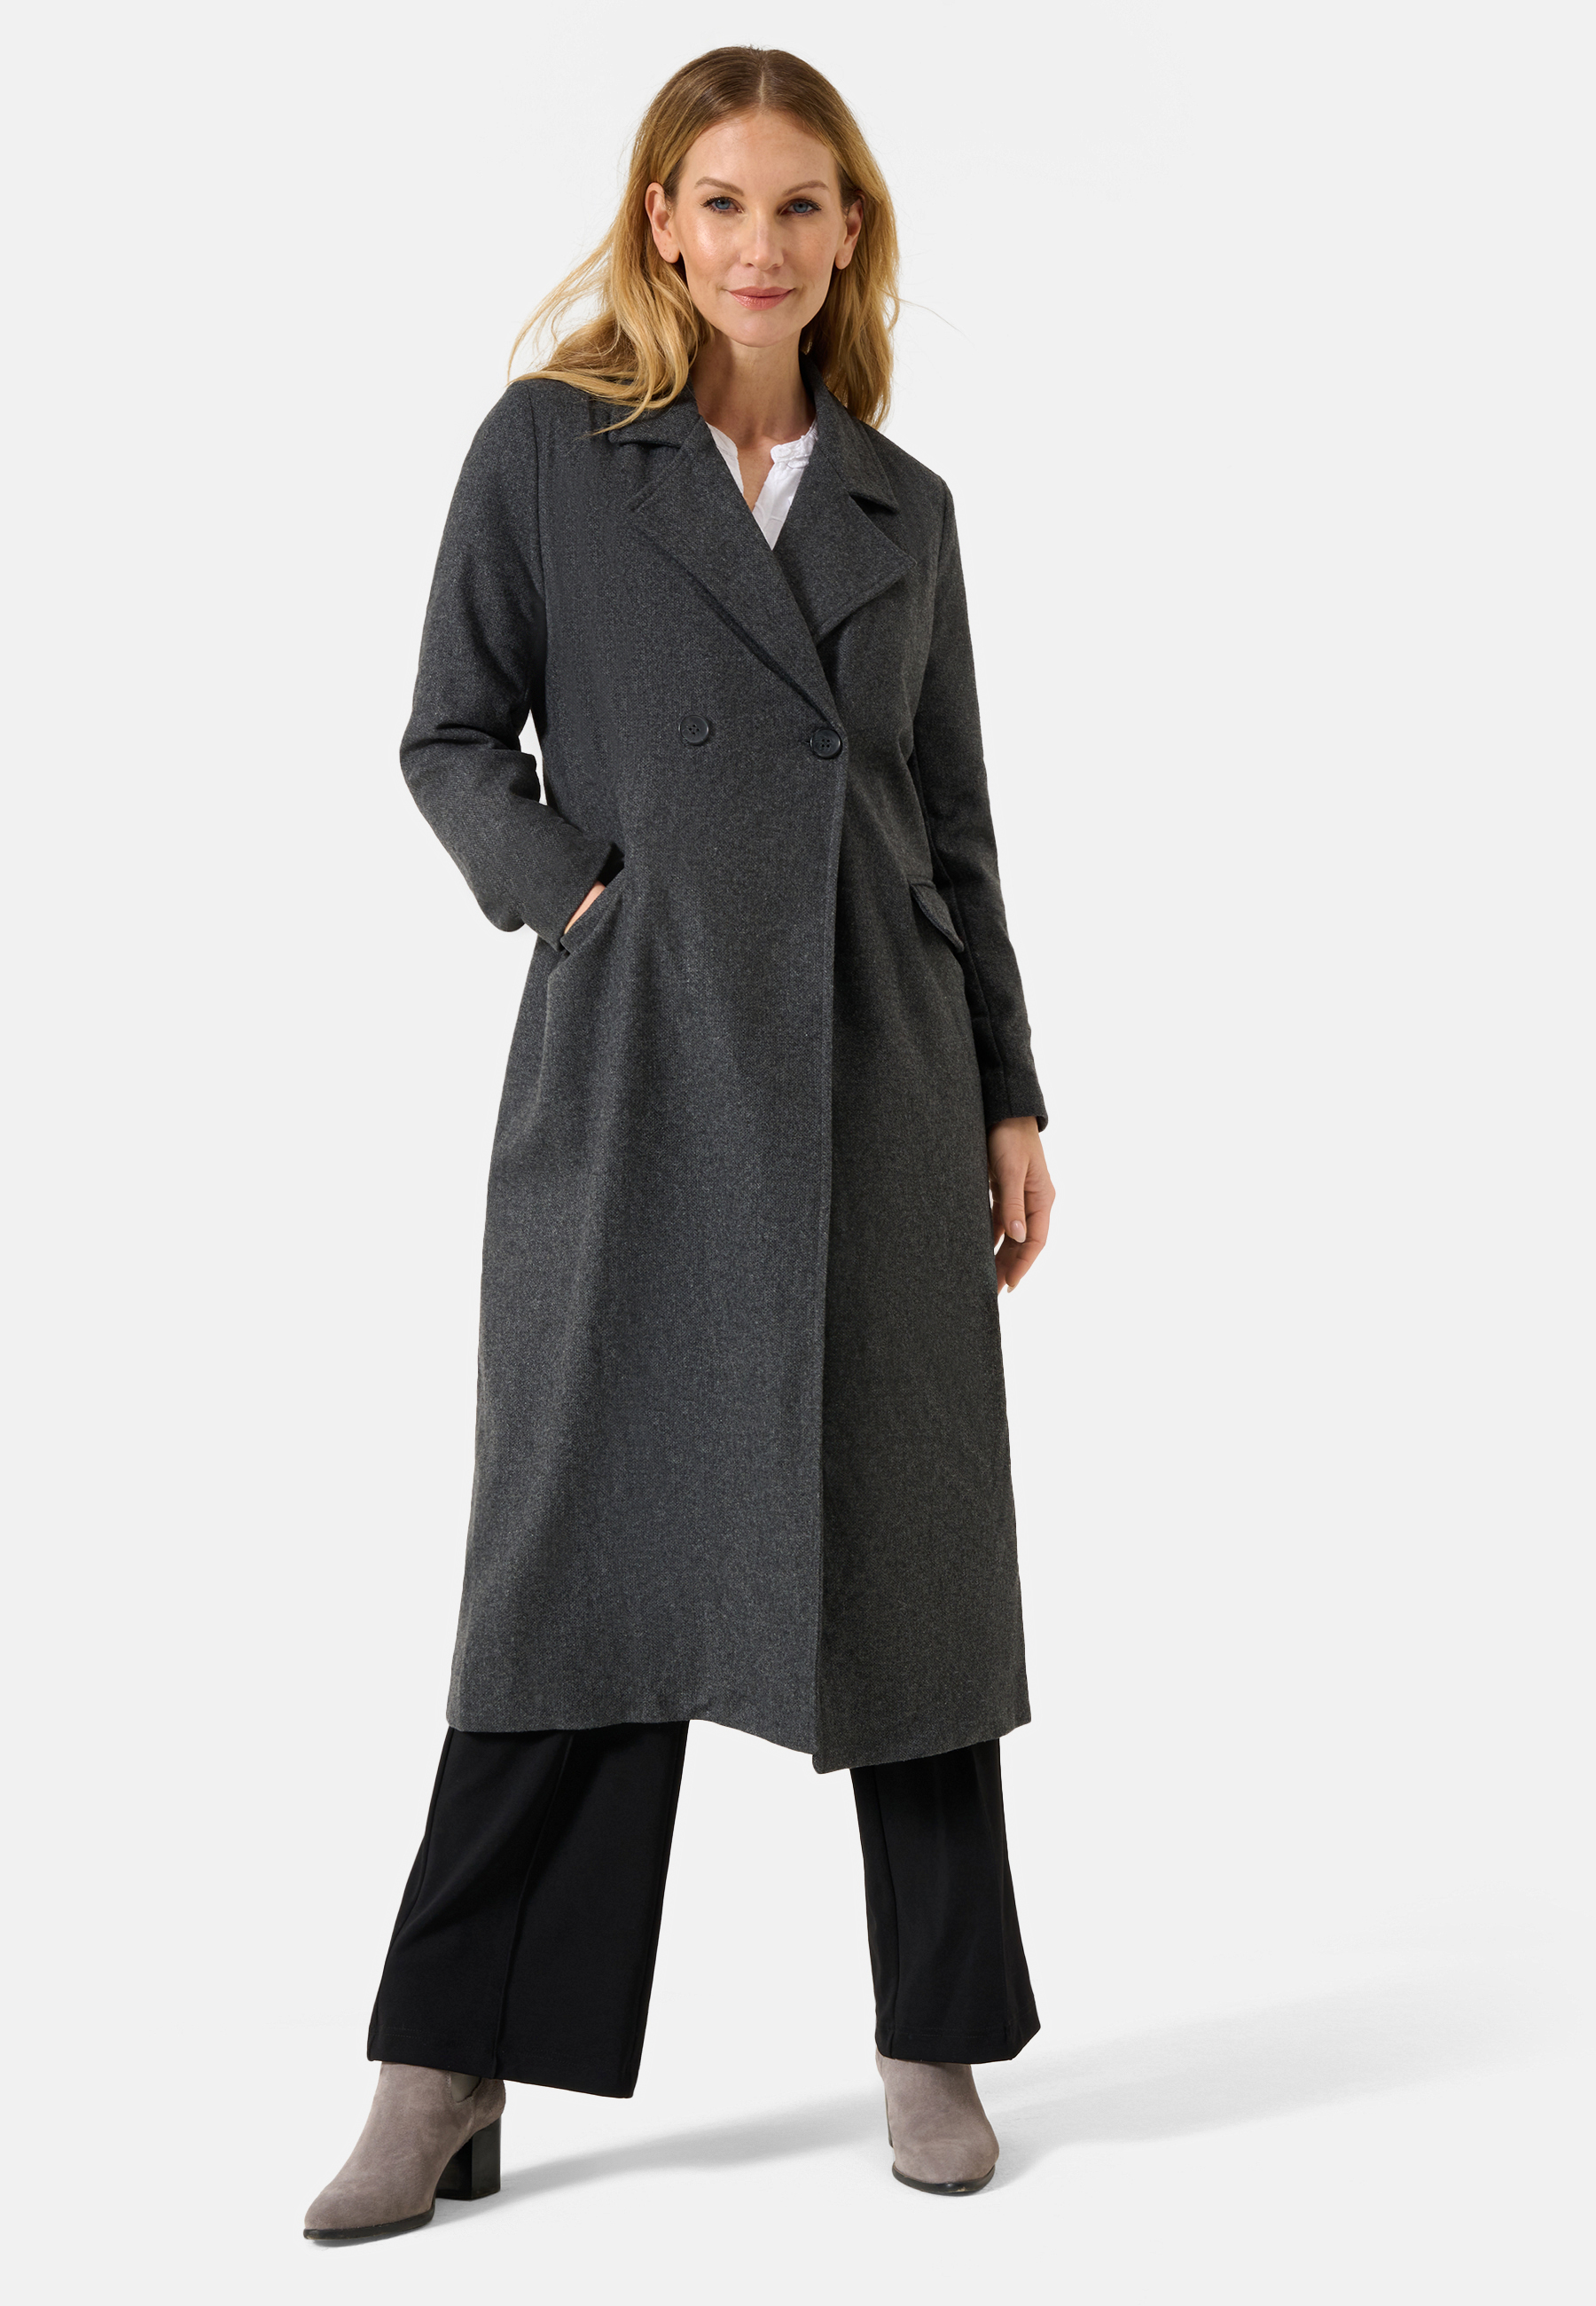 Damen Textil Mantel Alberta in Grau von Ricano, Frontansicht an Model